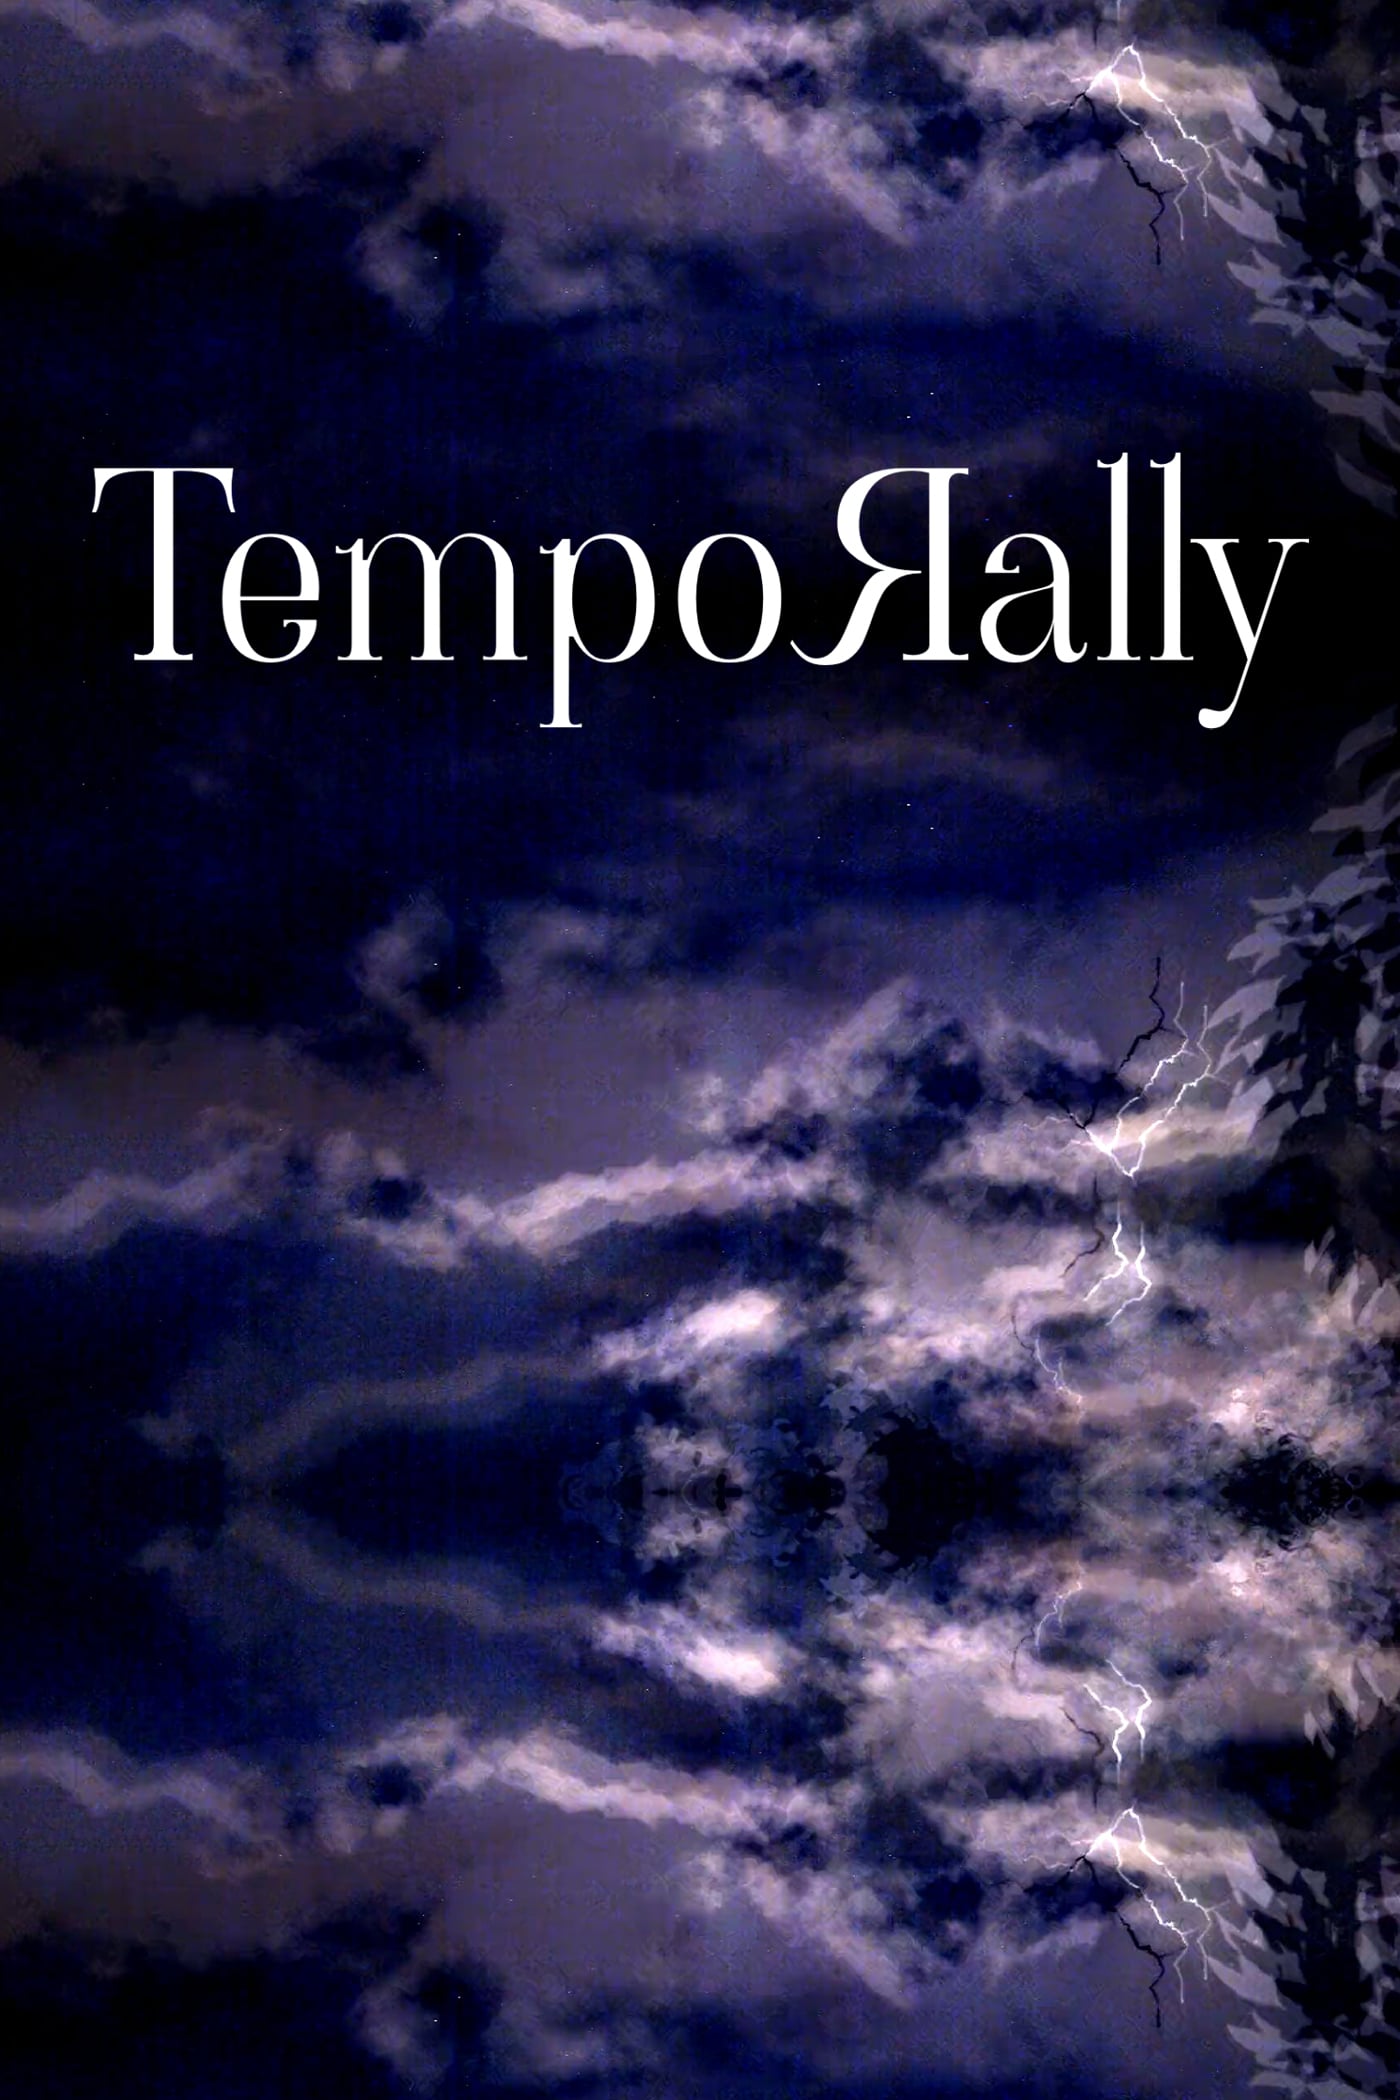 Temporally